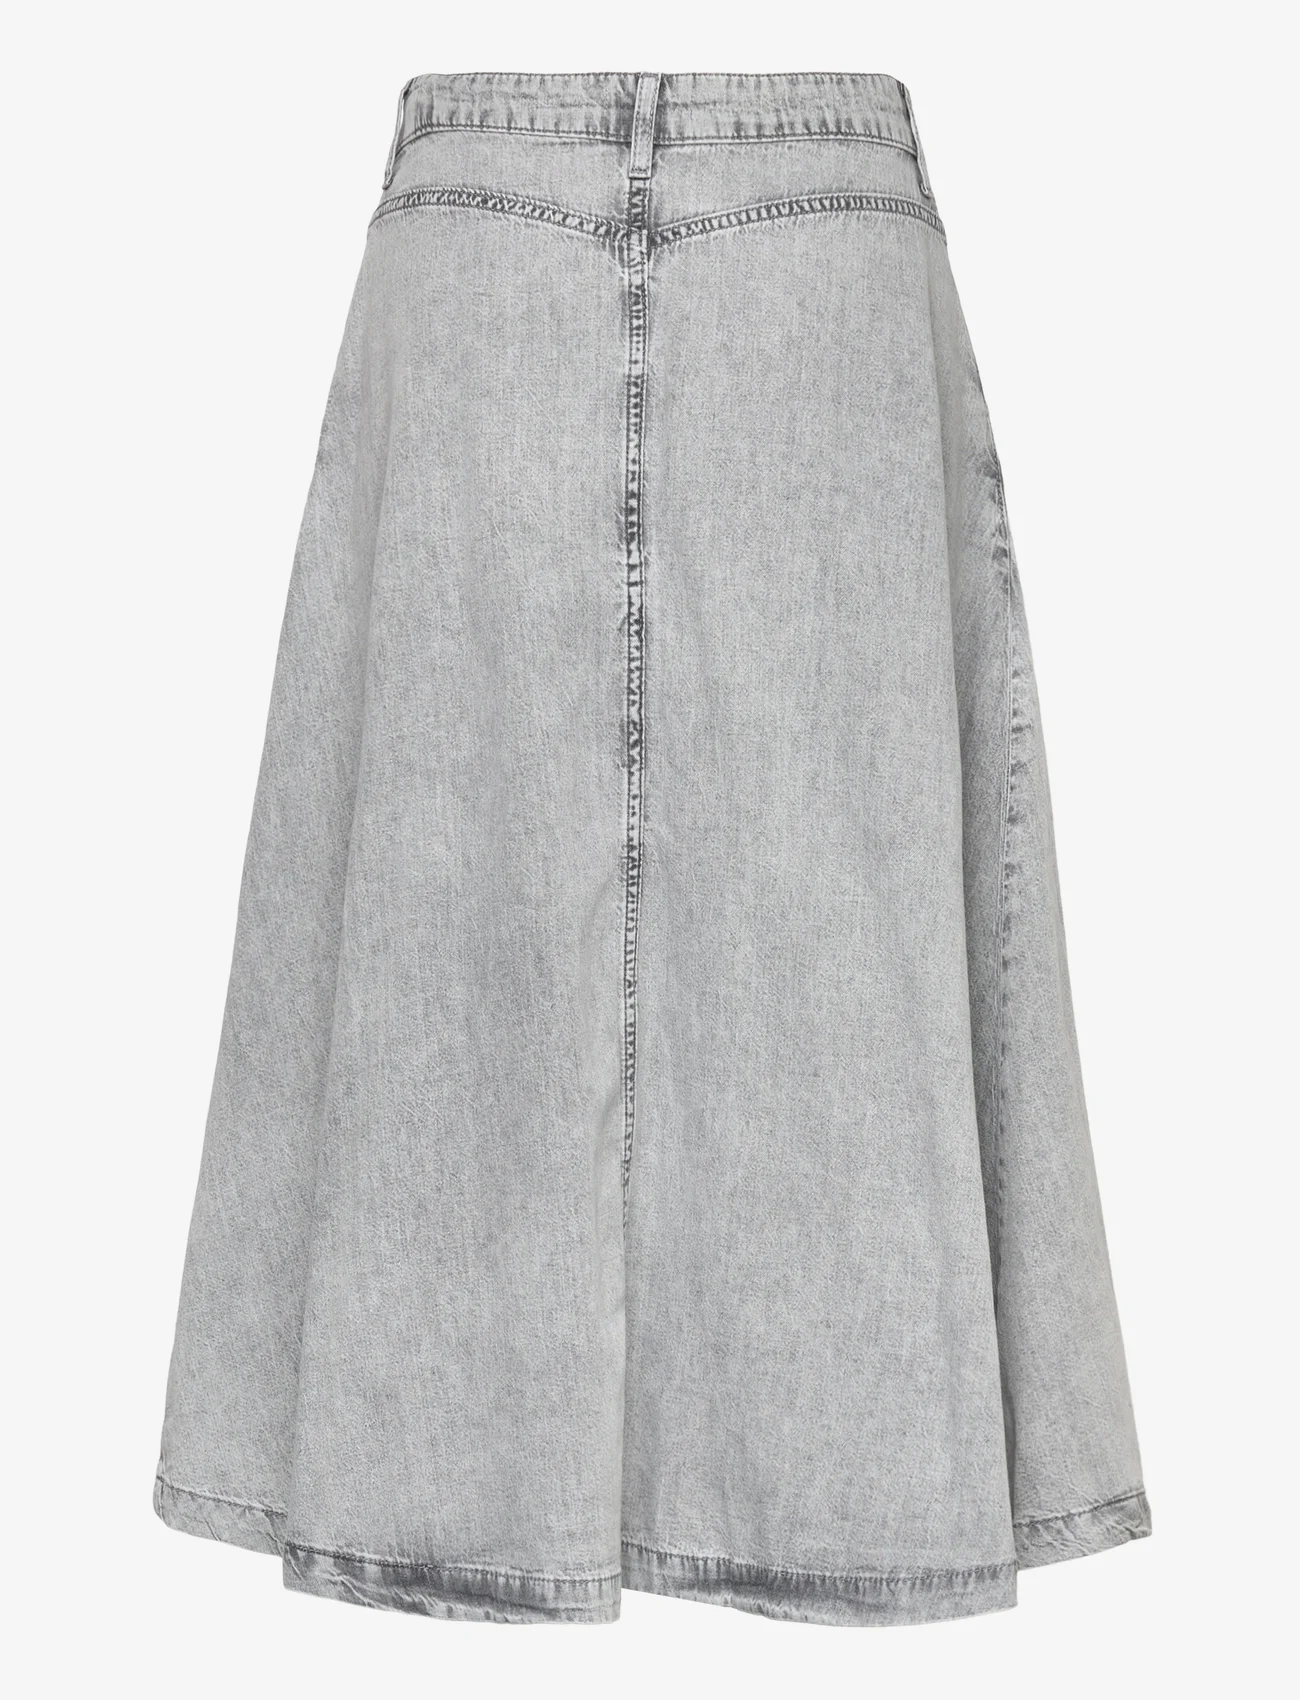 Basic Apparel - Bluebell Skirt - grey - 1